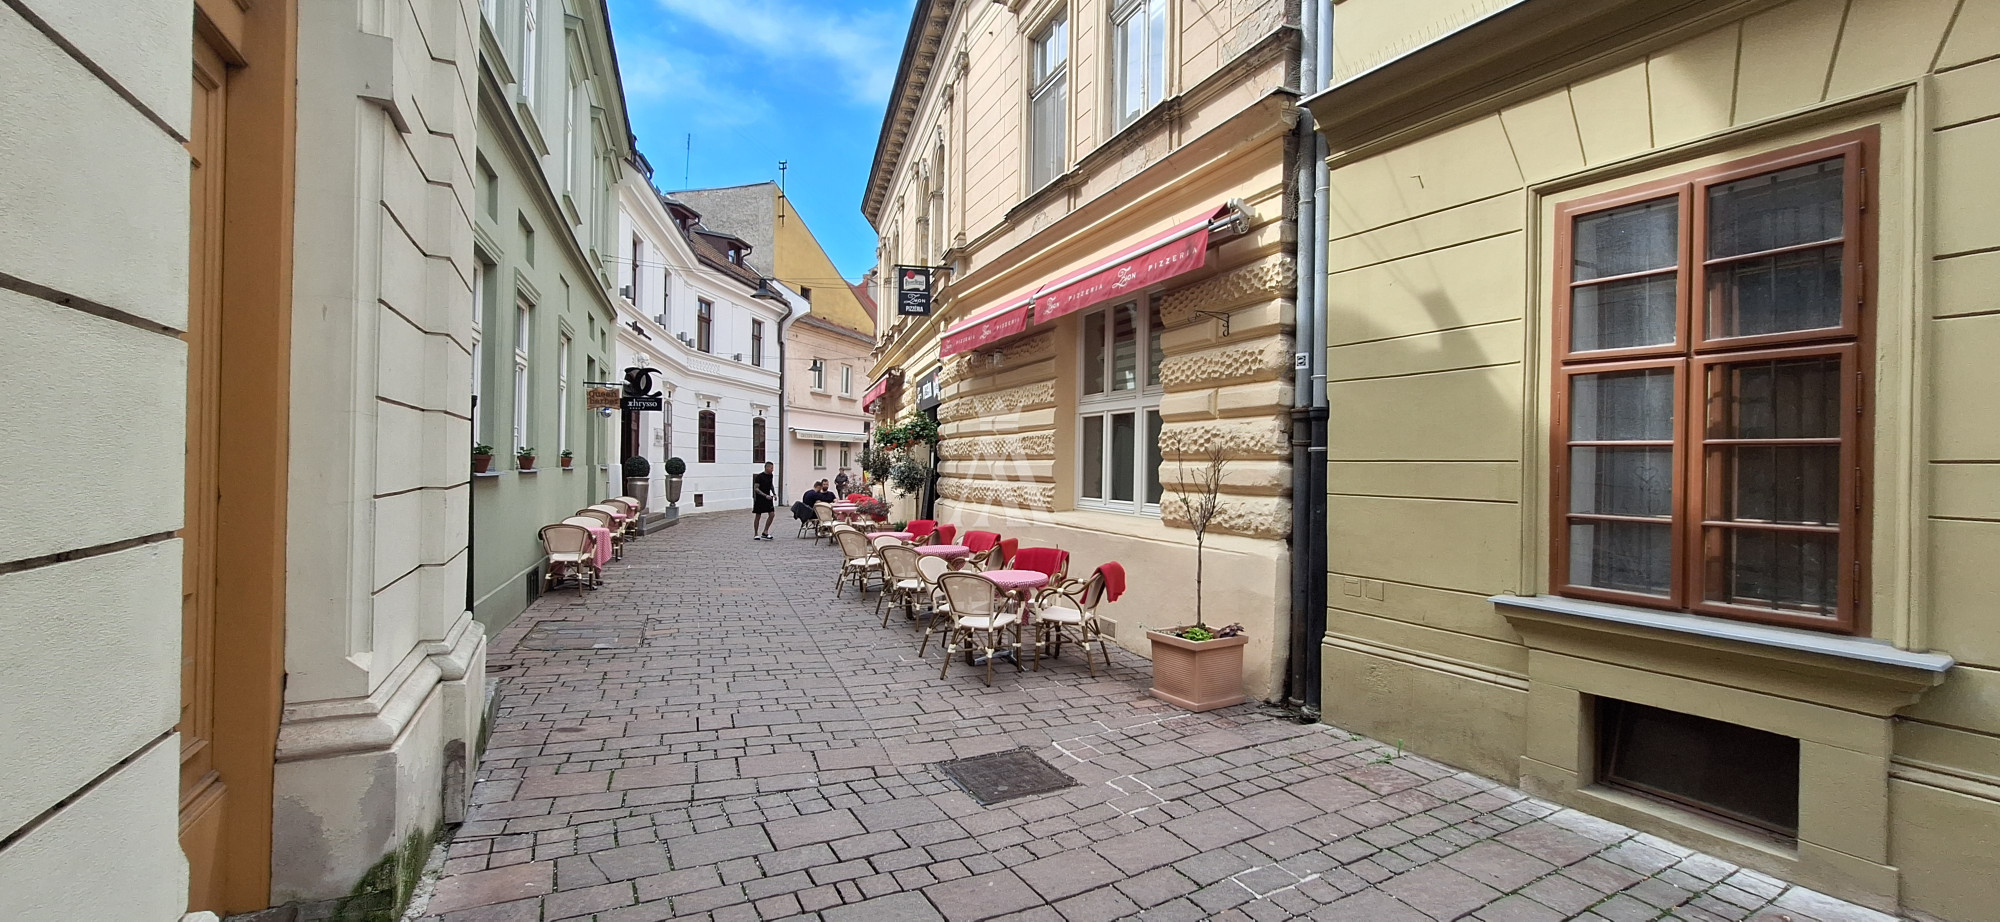 Novo zrekonštruovaný, štýlový byt v historickom centre Košíc